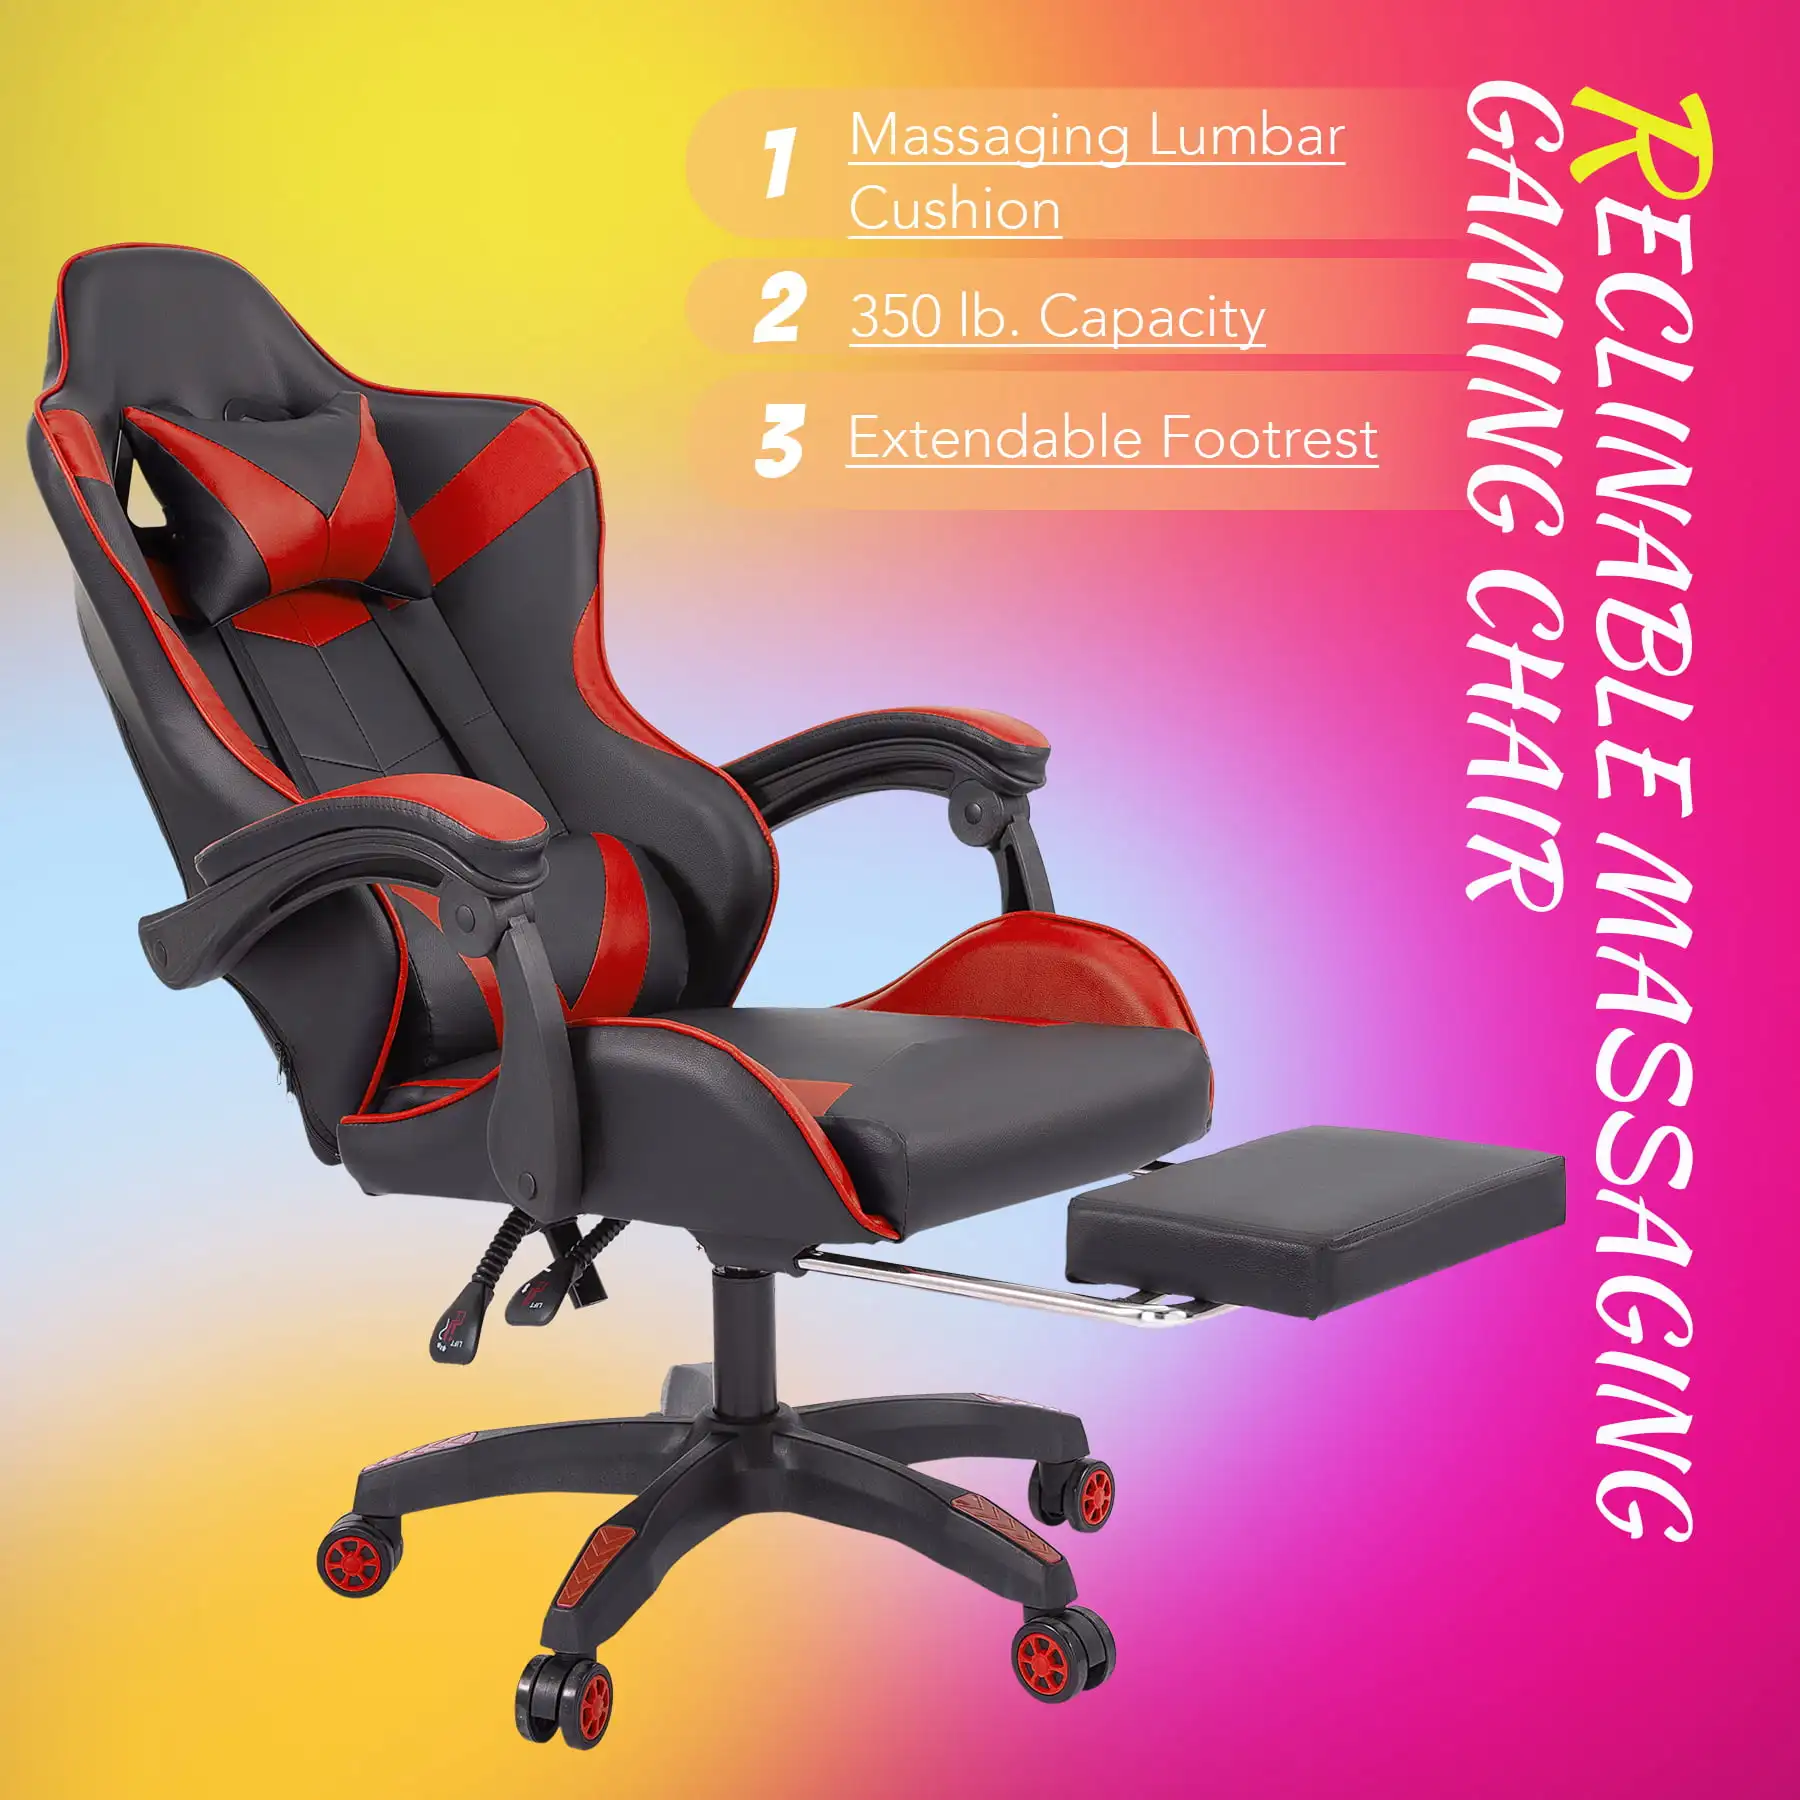 

Игровое кресло Bestco с высокой спинкой и поддержкой поясницы, Черное и красное компьютерное кресло, игровое кресло